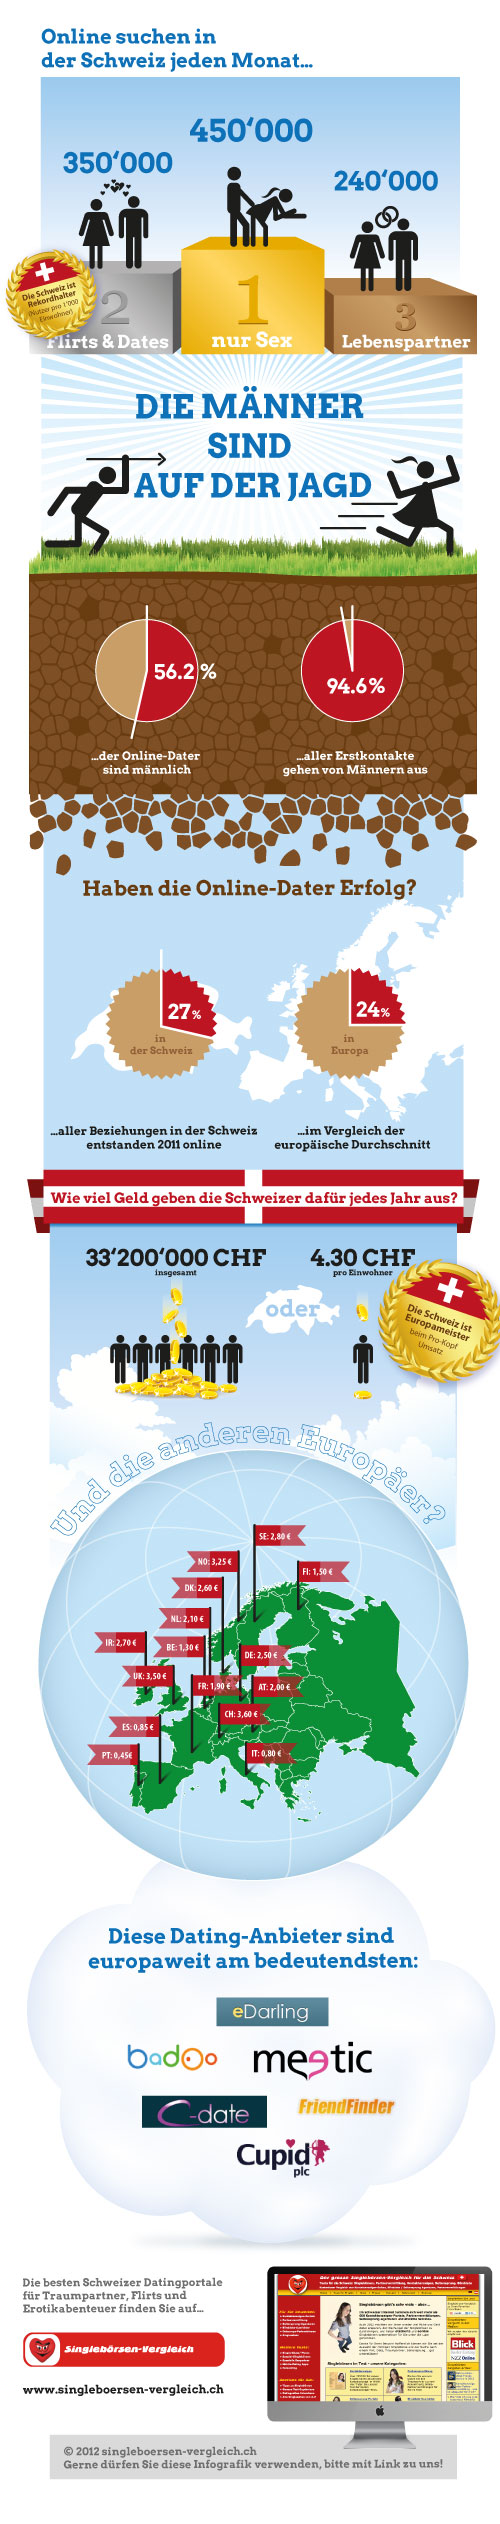 Infografik: Die wichtigsten Kennzahlen zum Online-Dating der Schweizer Singles in einer Grafik